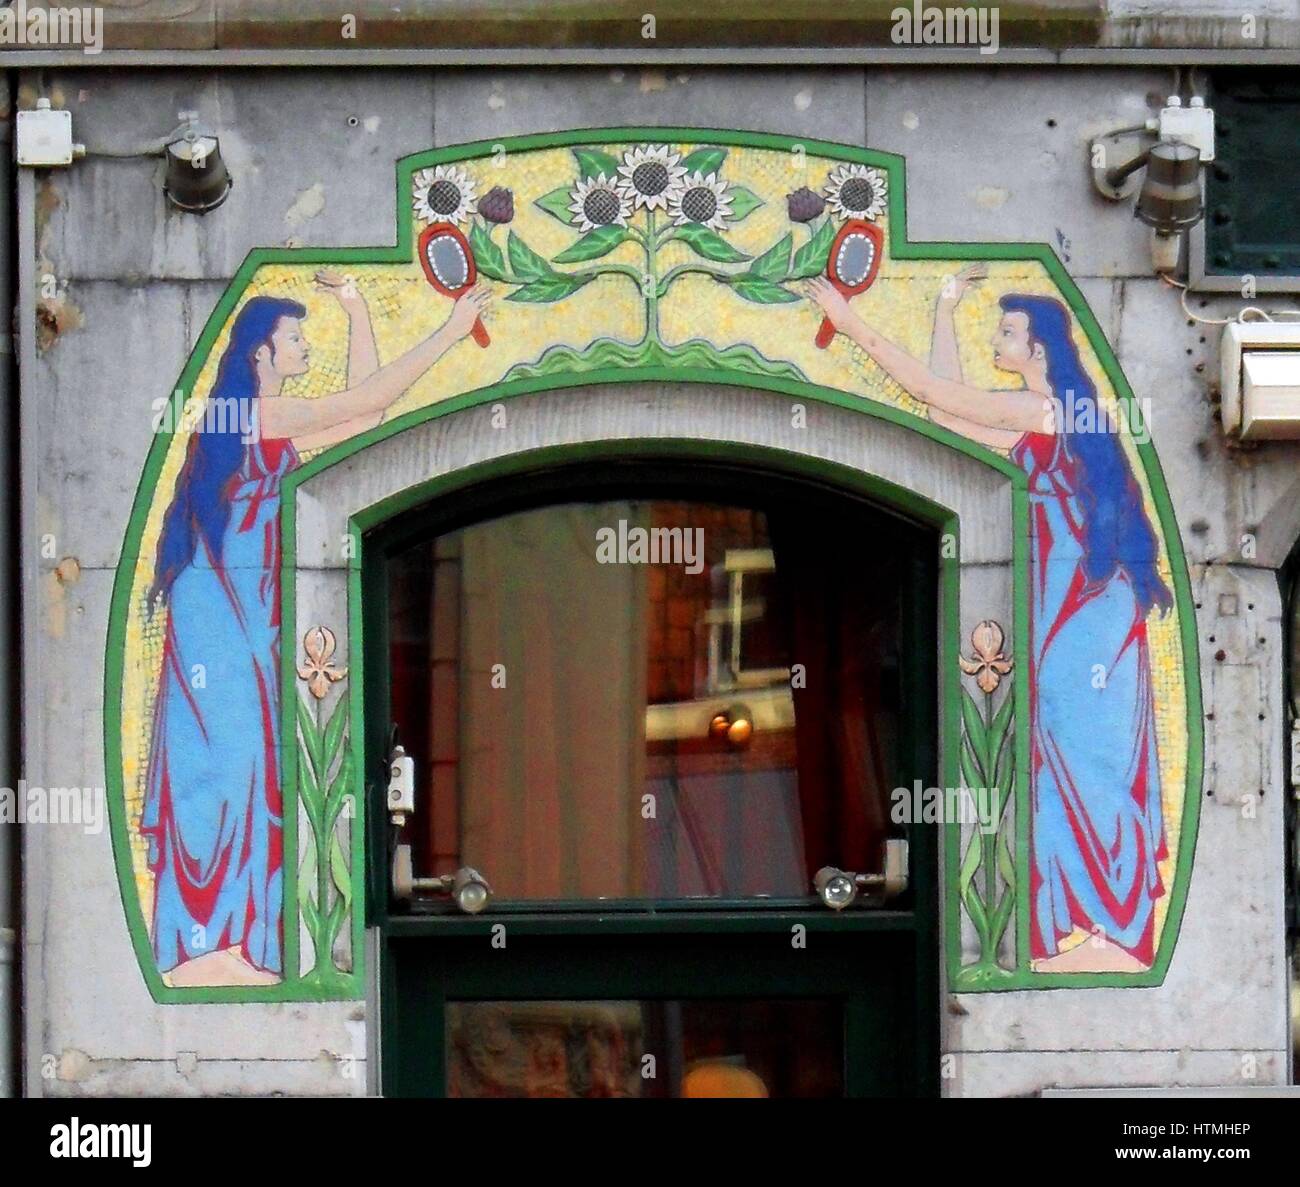 Détail d'une frise décorative art nouveau entourant la porte d'une boutique à Amsterdam. De style hollandais vers 1905 Banque D'Images